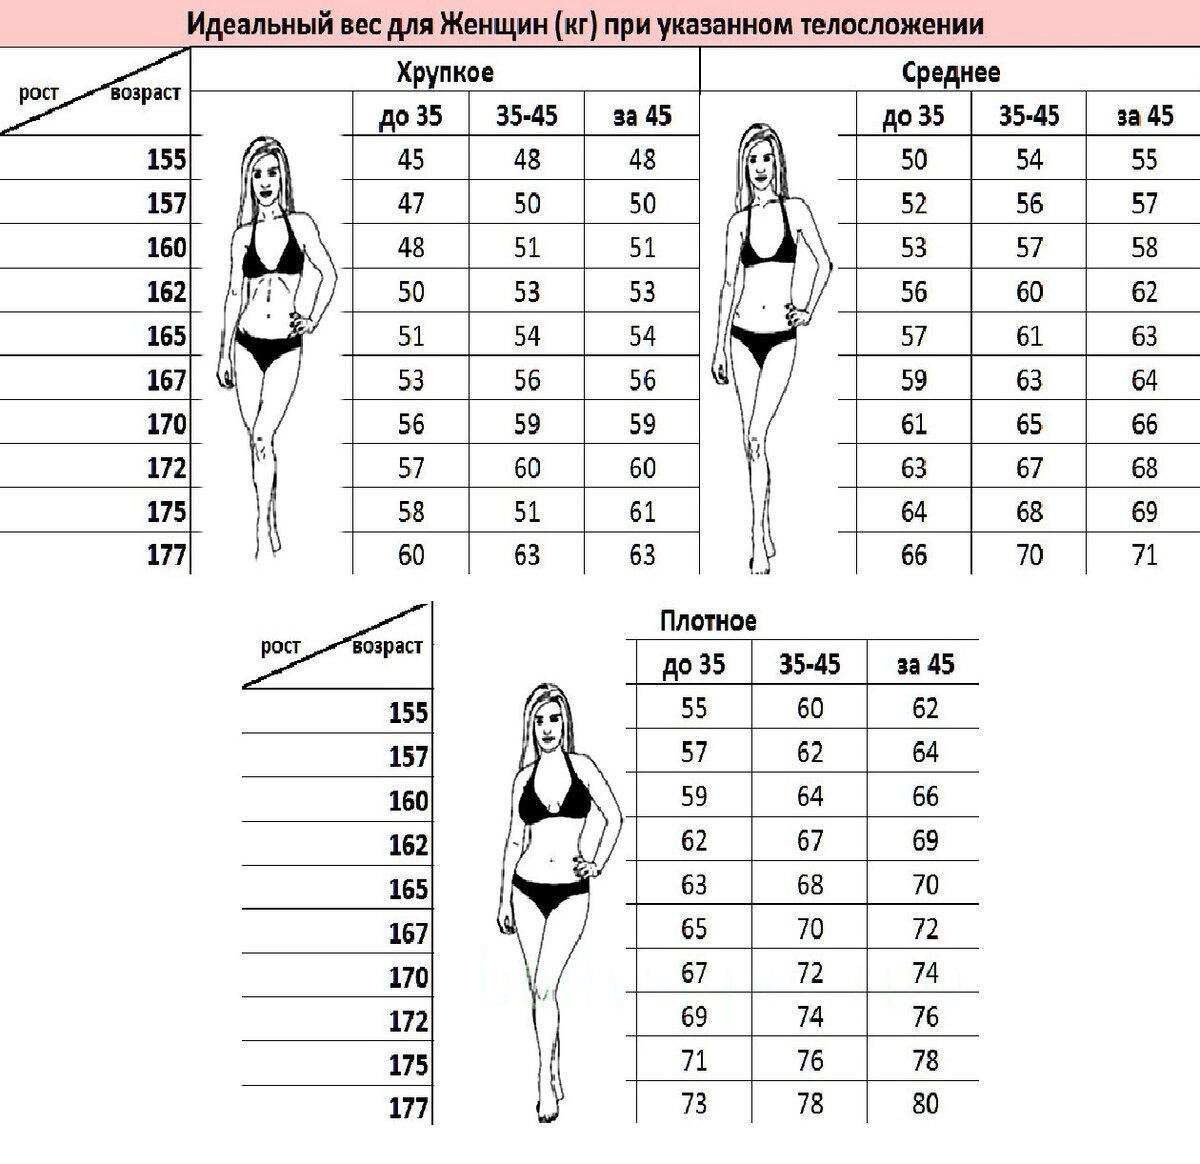 Какой вес считается нормальным. Какой рост для девушки считается идеальным. Как определить параметры девушки. Какой рост считается нормальным для женщины. 155 идеальный рост